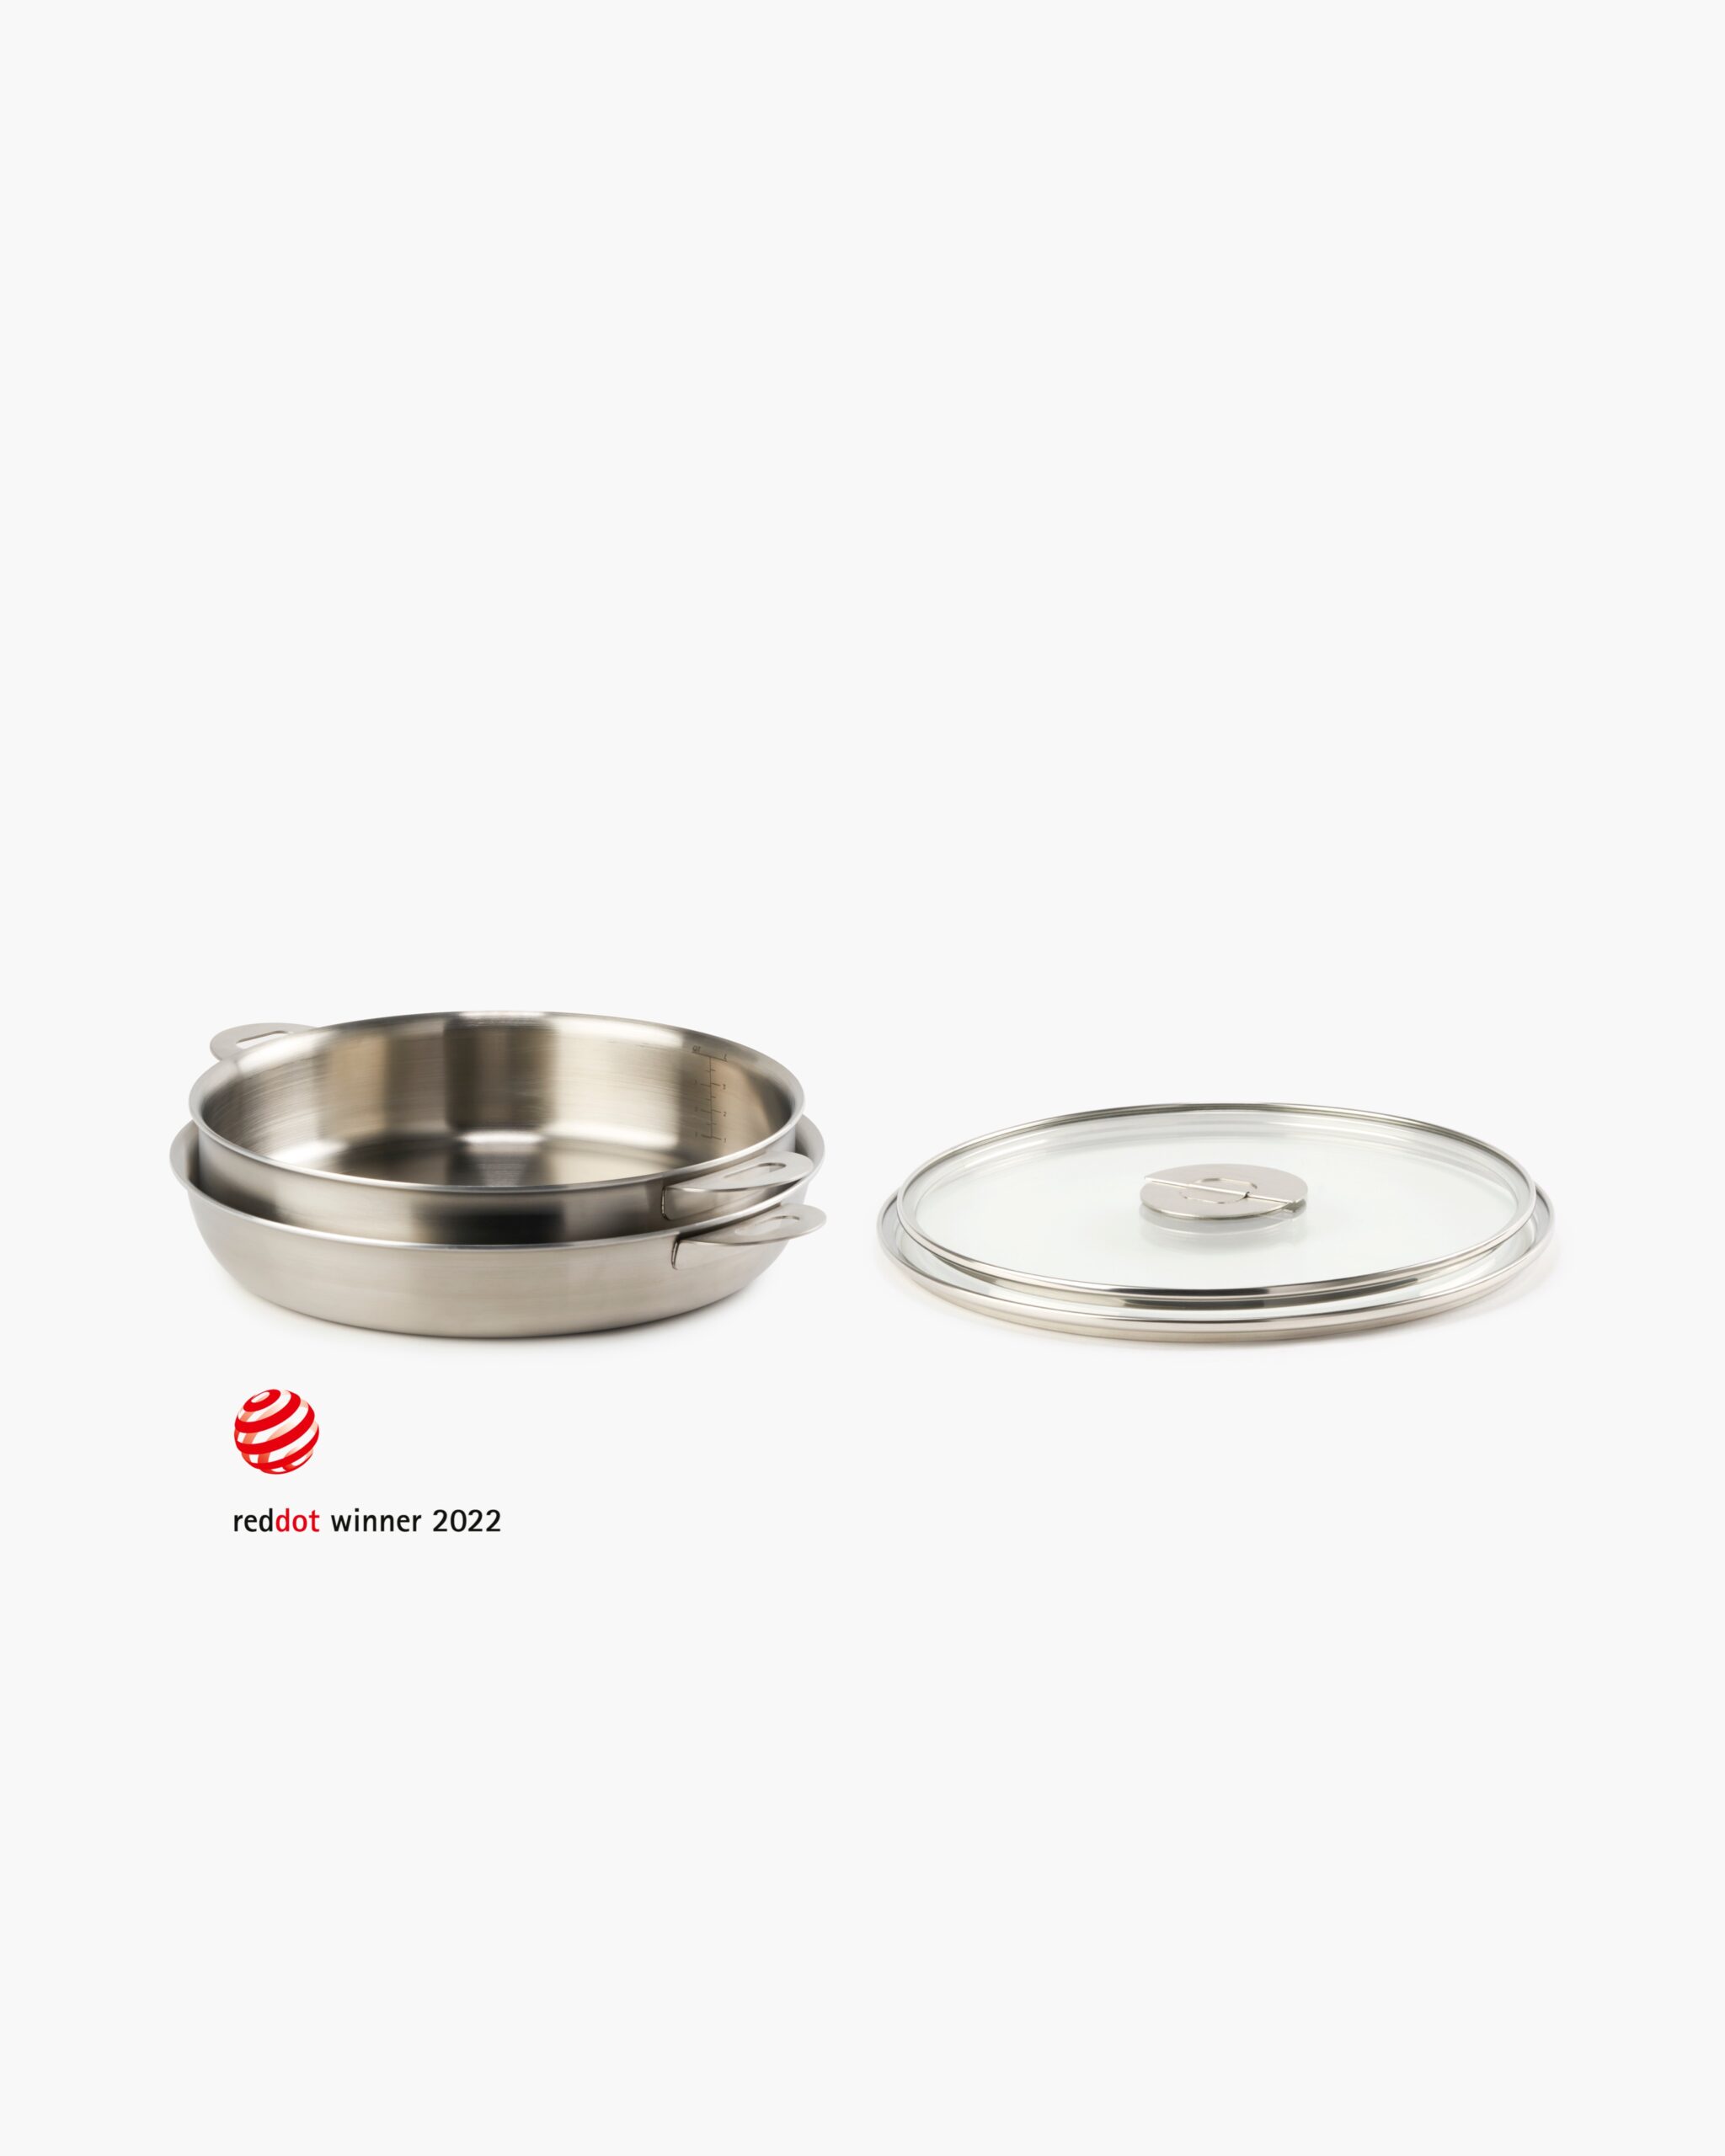 ENSEMBL Stackware Core2 Cookware Stainless Steel Red Dot Design Award Winning.